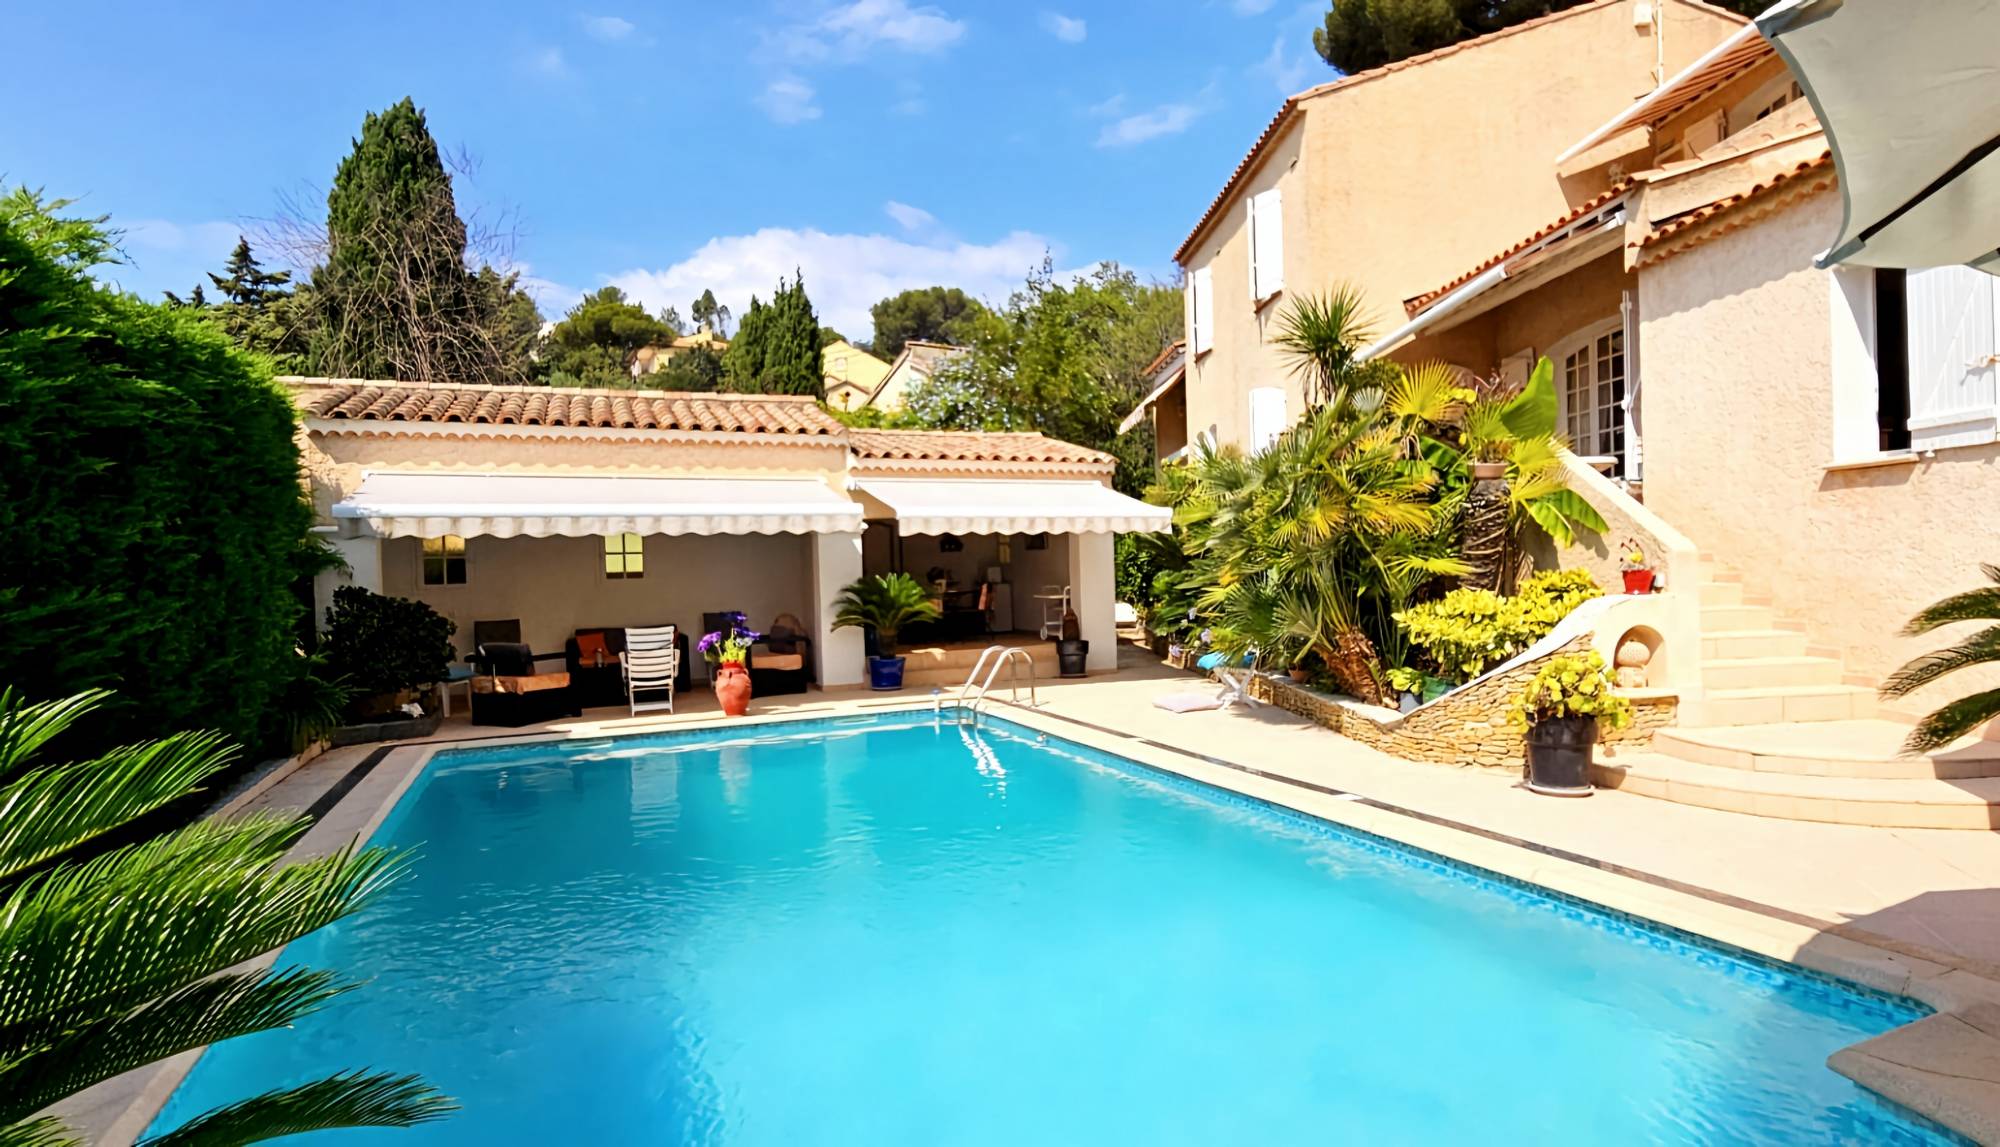 Villa traditionnelle avec piscine et jardin exotique à vendre sur la ville côtière de La Seyne-sur-Mer